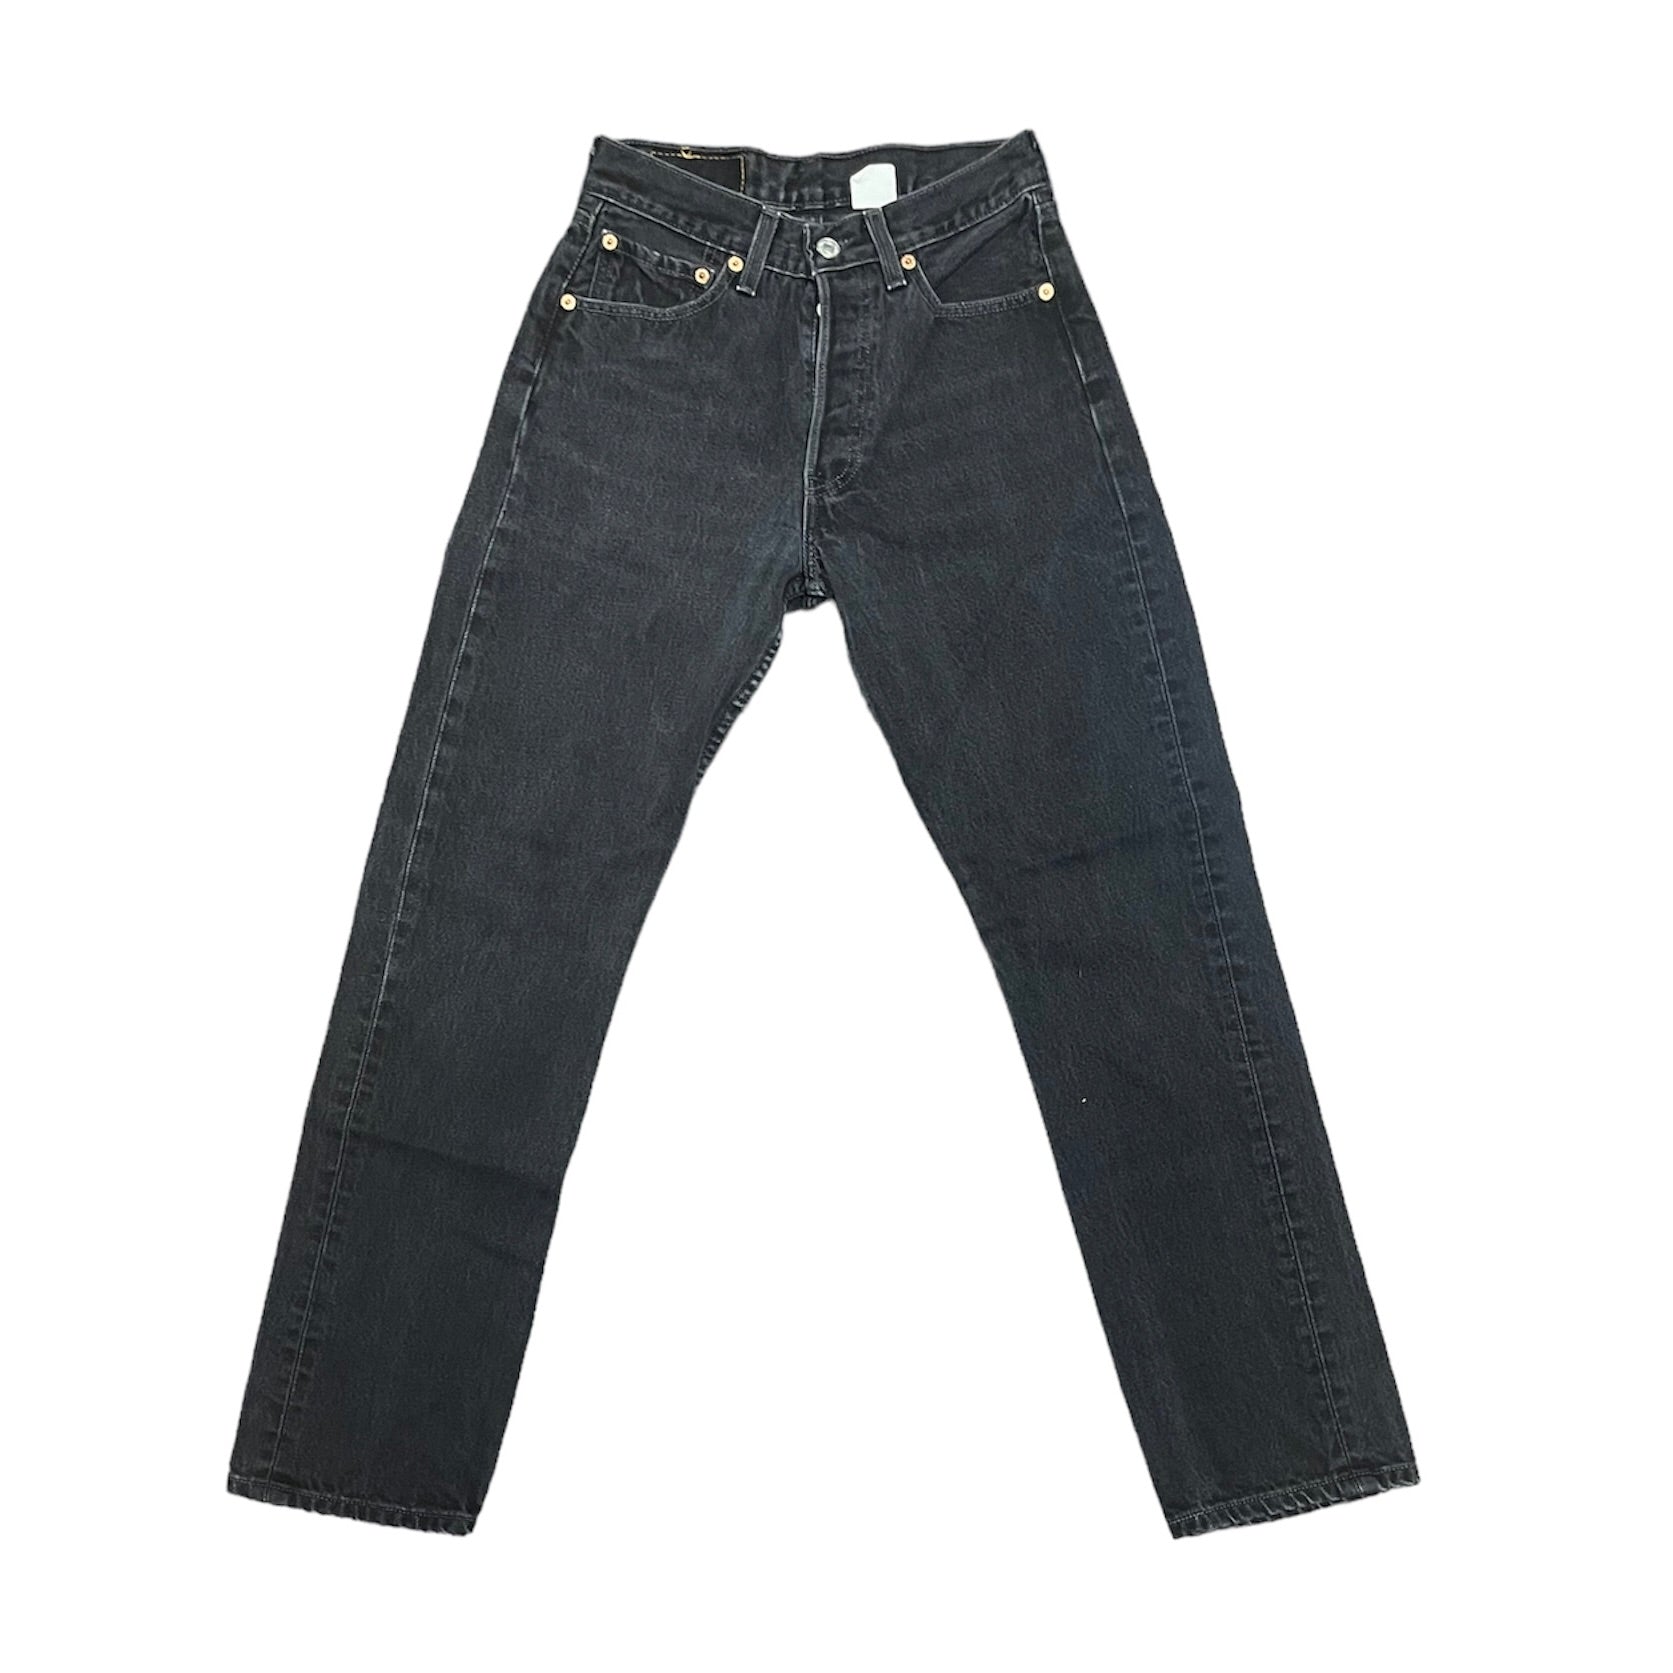 Vintage Levis 501 Vintage Black Jeans (W27/L30)